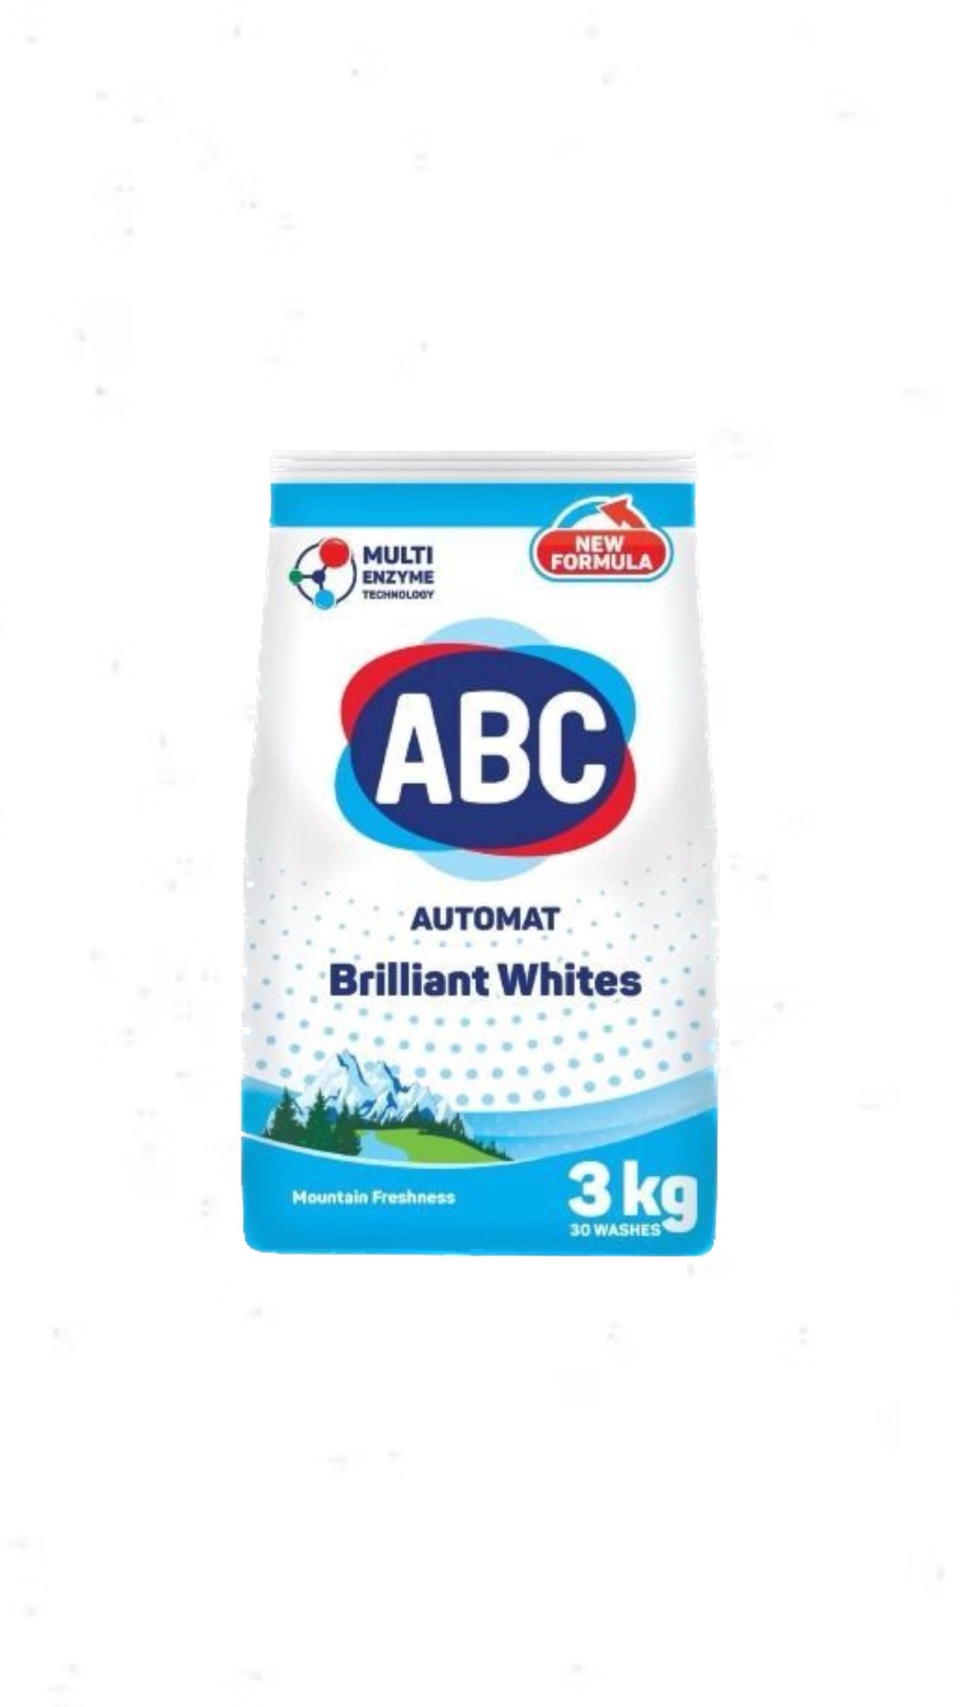 Стиральный порошок Для белого Горная Свежесть3 кг ABC Турция - 500 ₽, заказать онлайн.